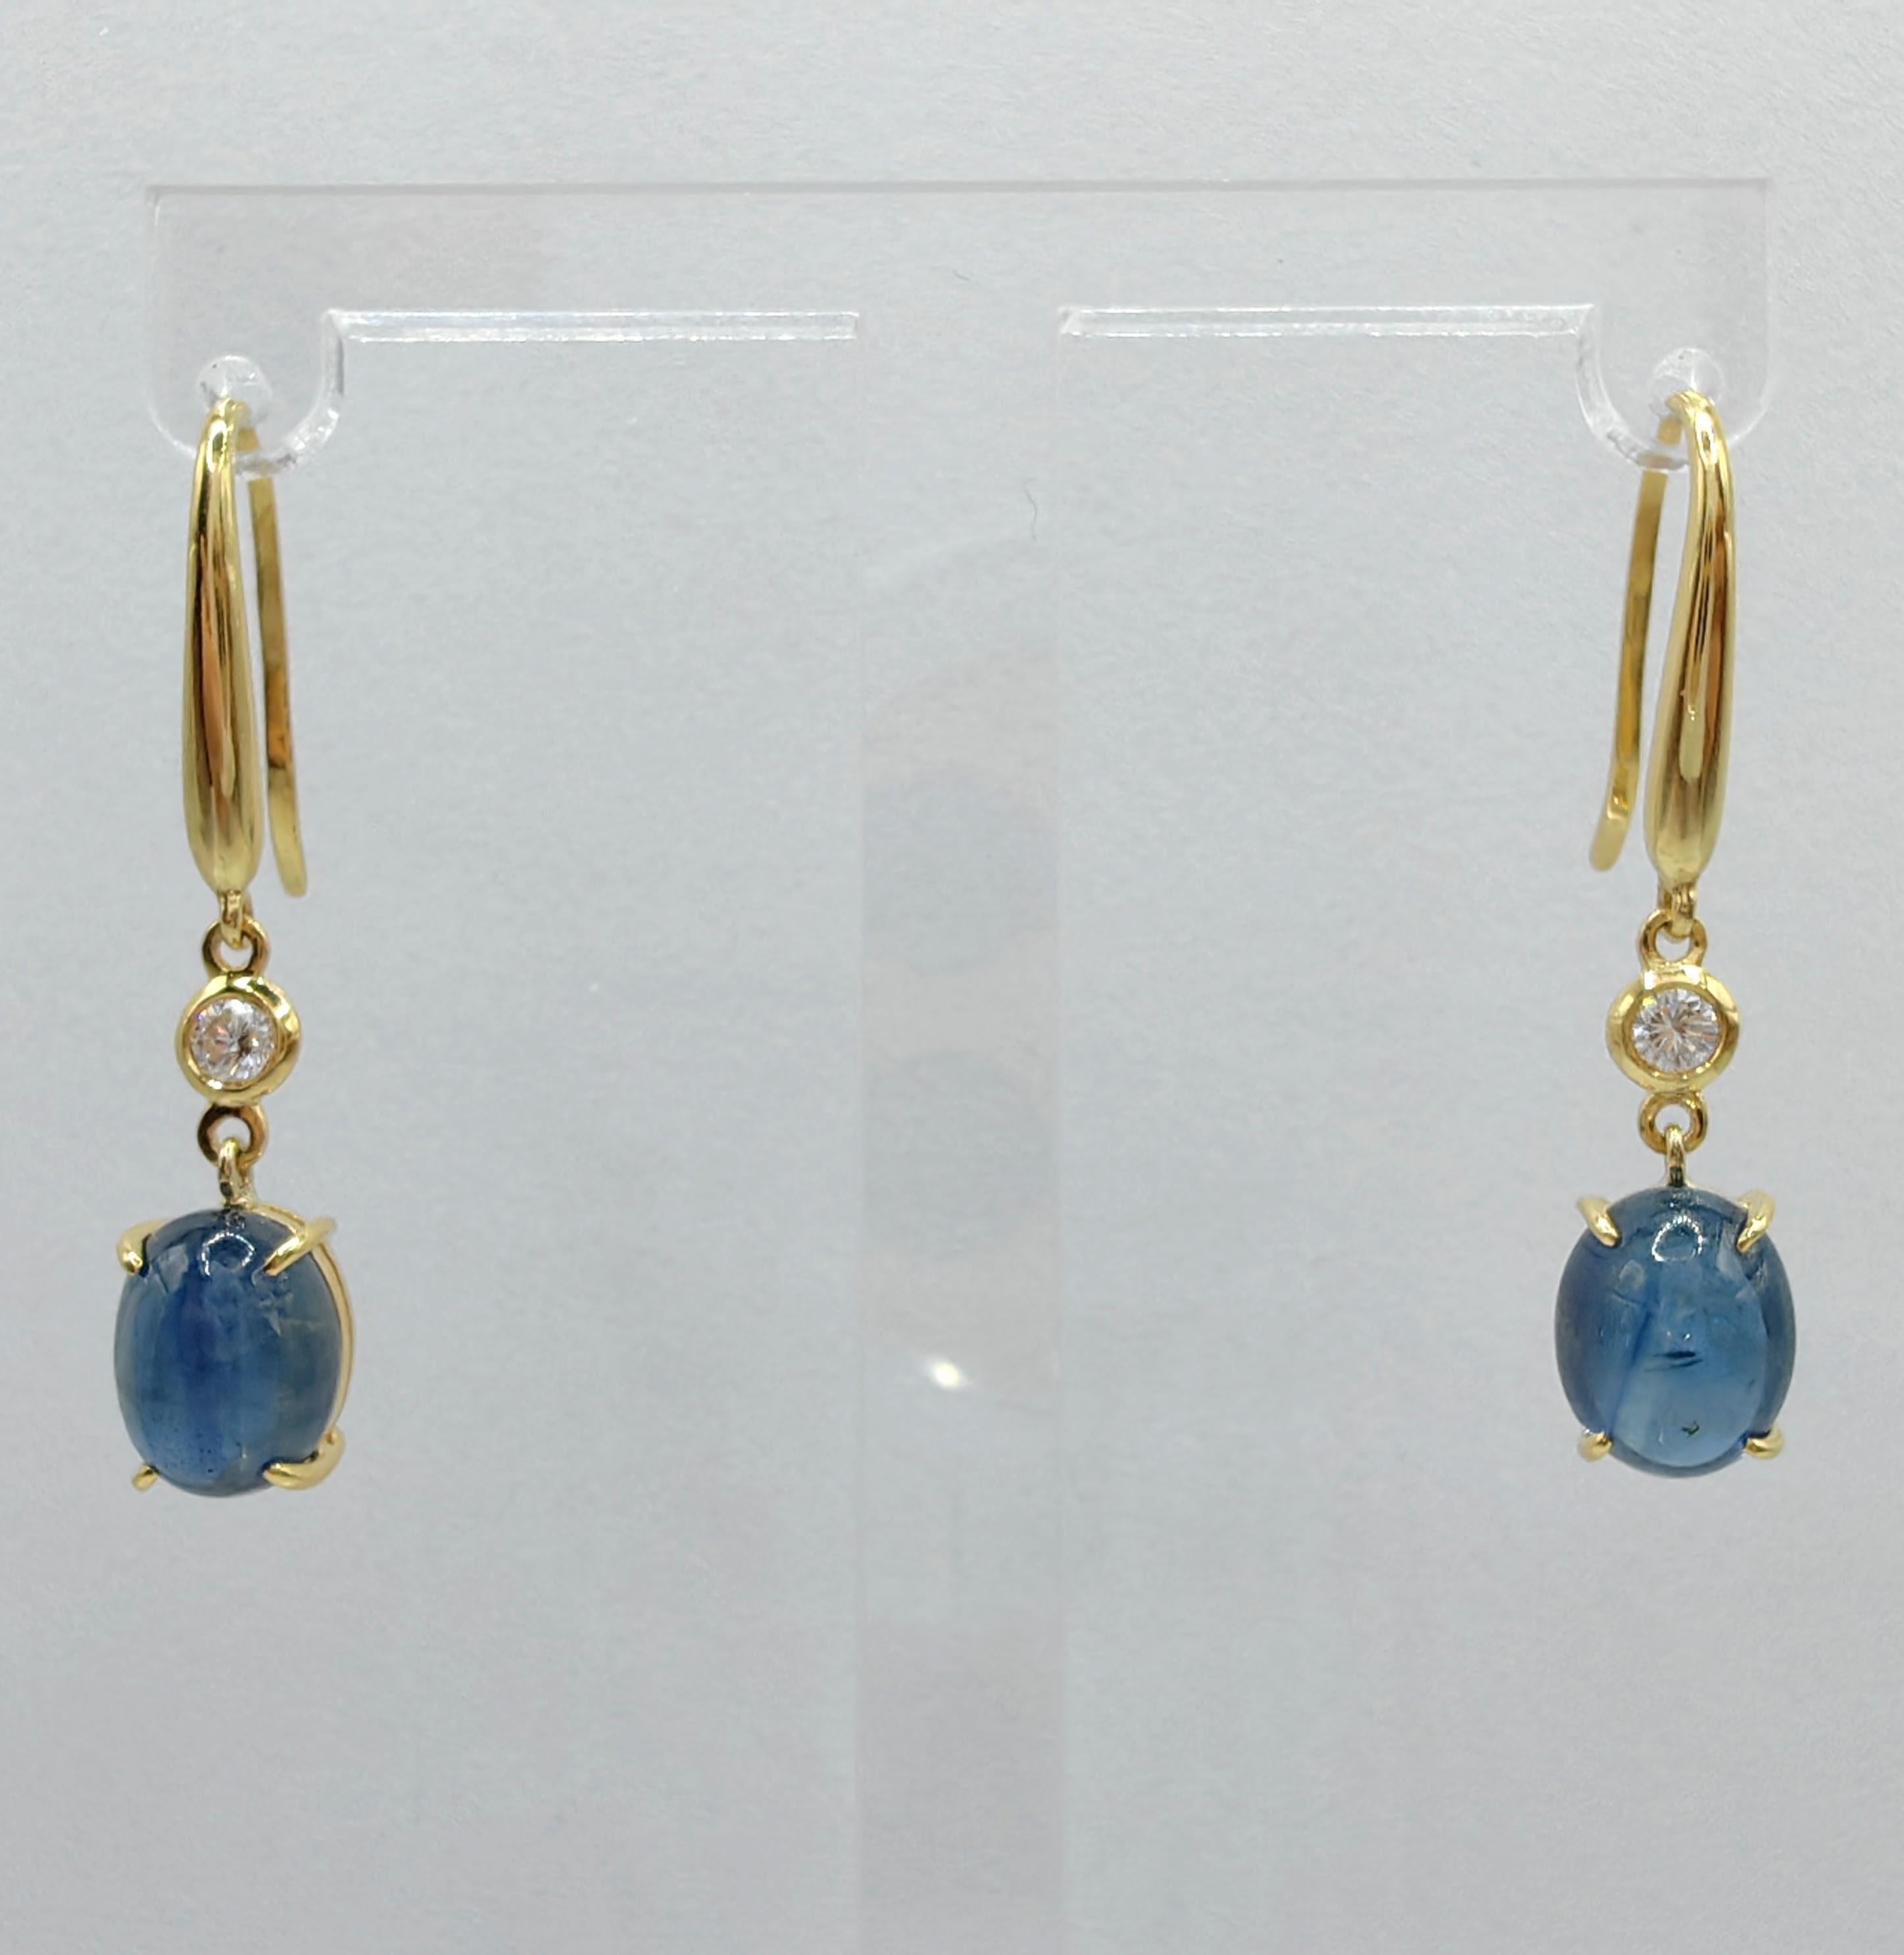 Voici nos exquises boucles d'oreilles pendantes saphir bleu cabochon 6.13ct diamant, où la beauté captivante des saphirs bleus et des diamants brillants occupe le devant de la scène. 

Au cœur de ces boucles d'oreilles se trouvent deux saphirs bleus